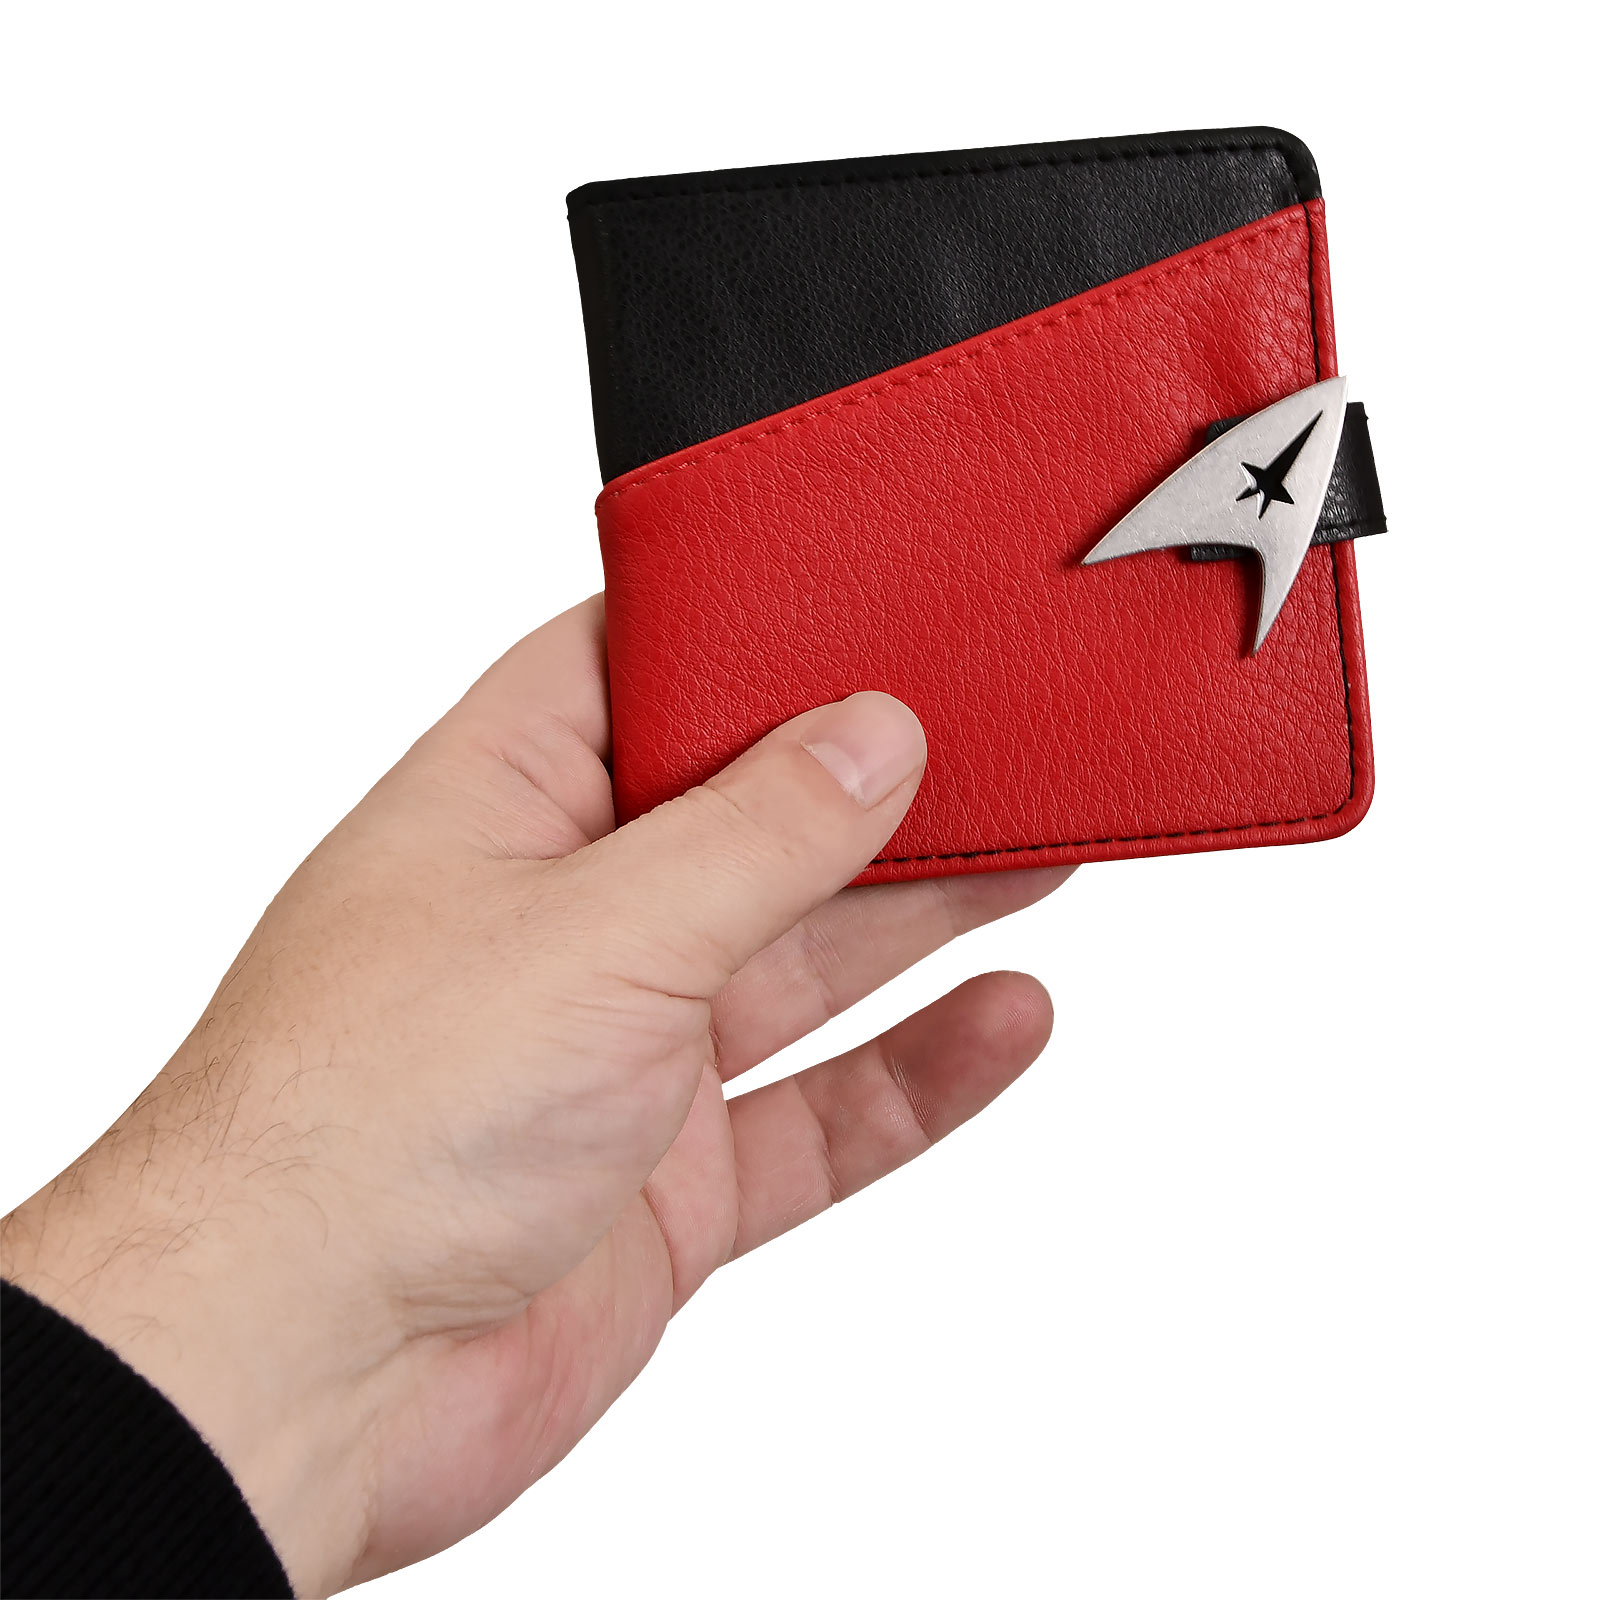 Star Trek - Commander Wallet